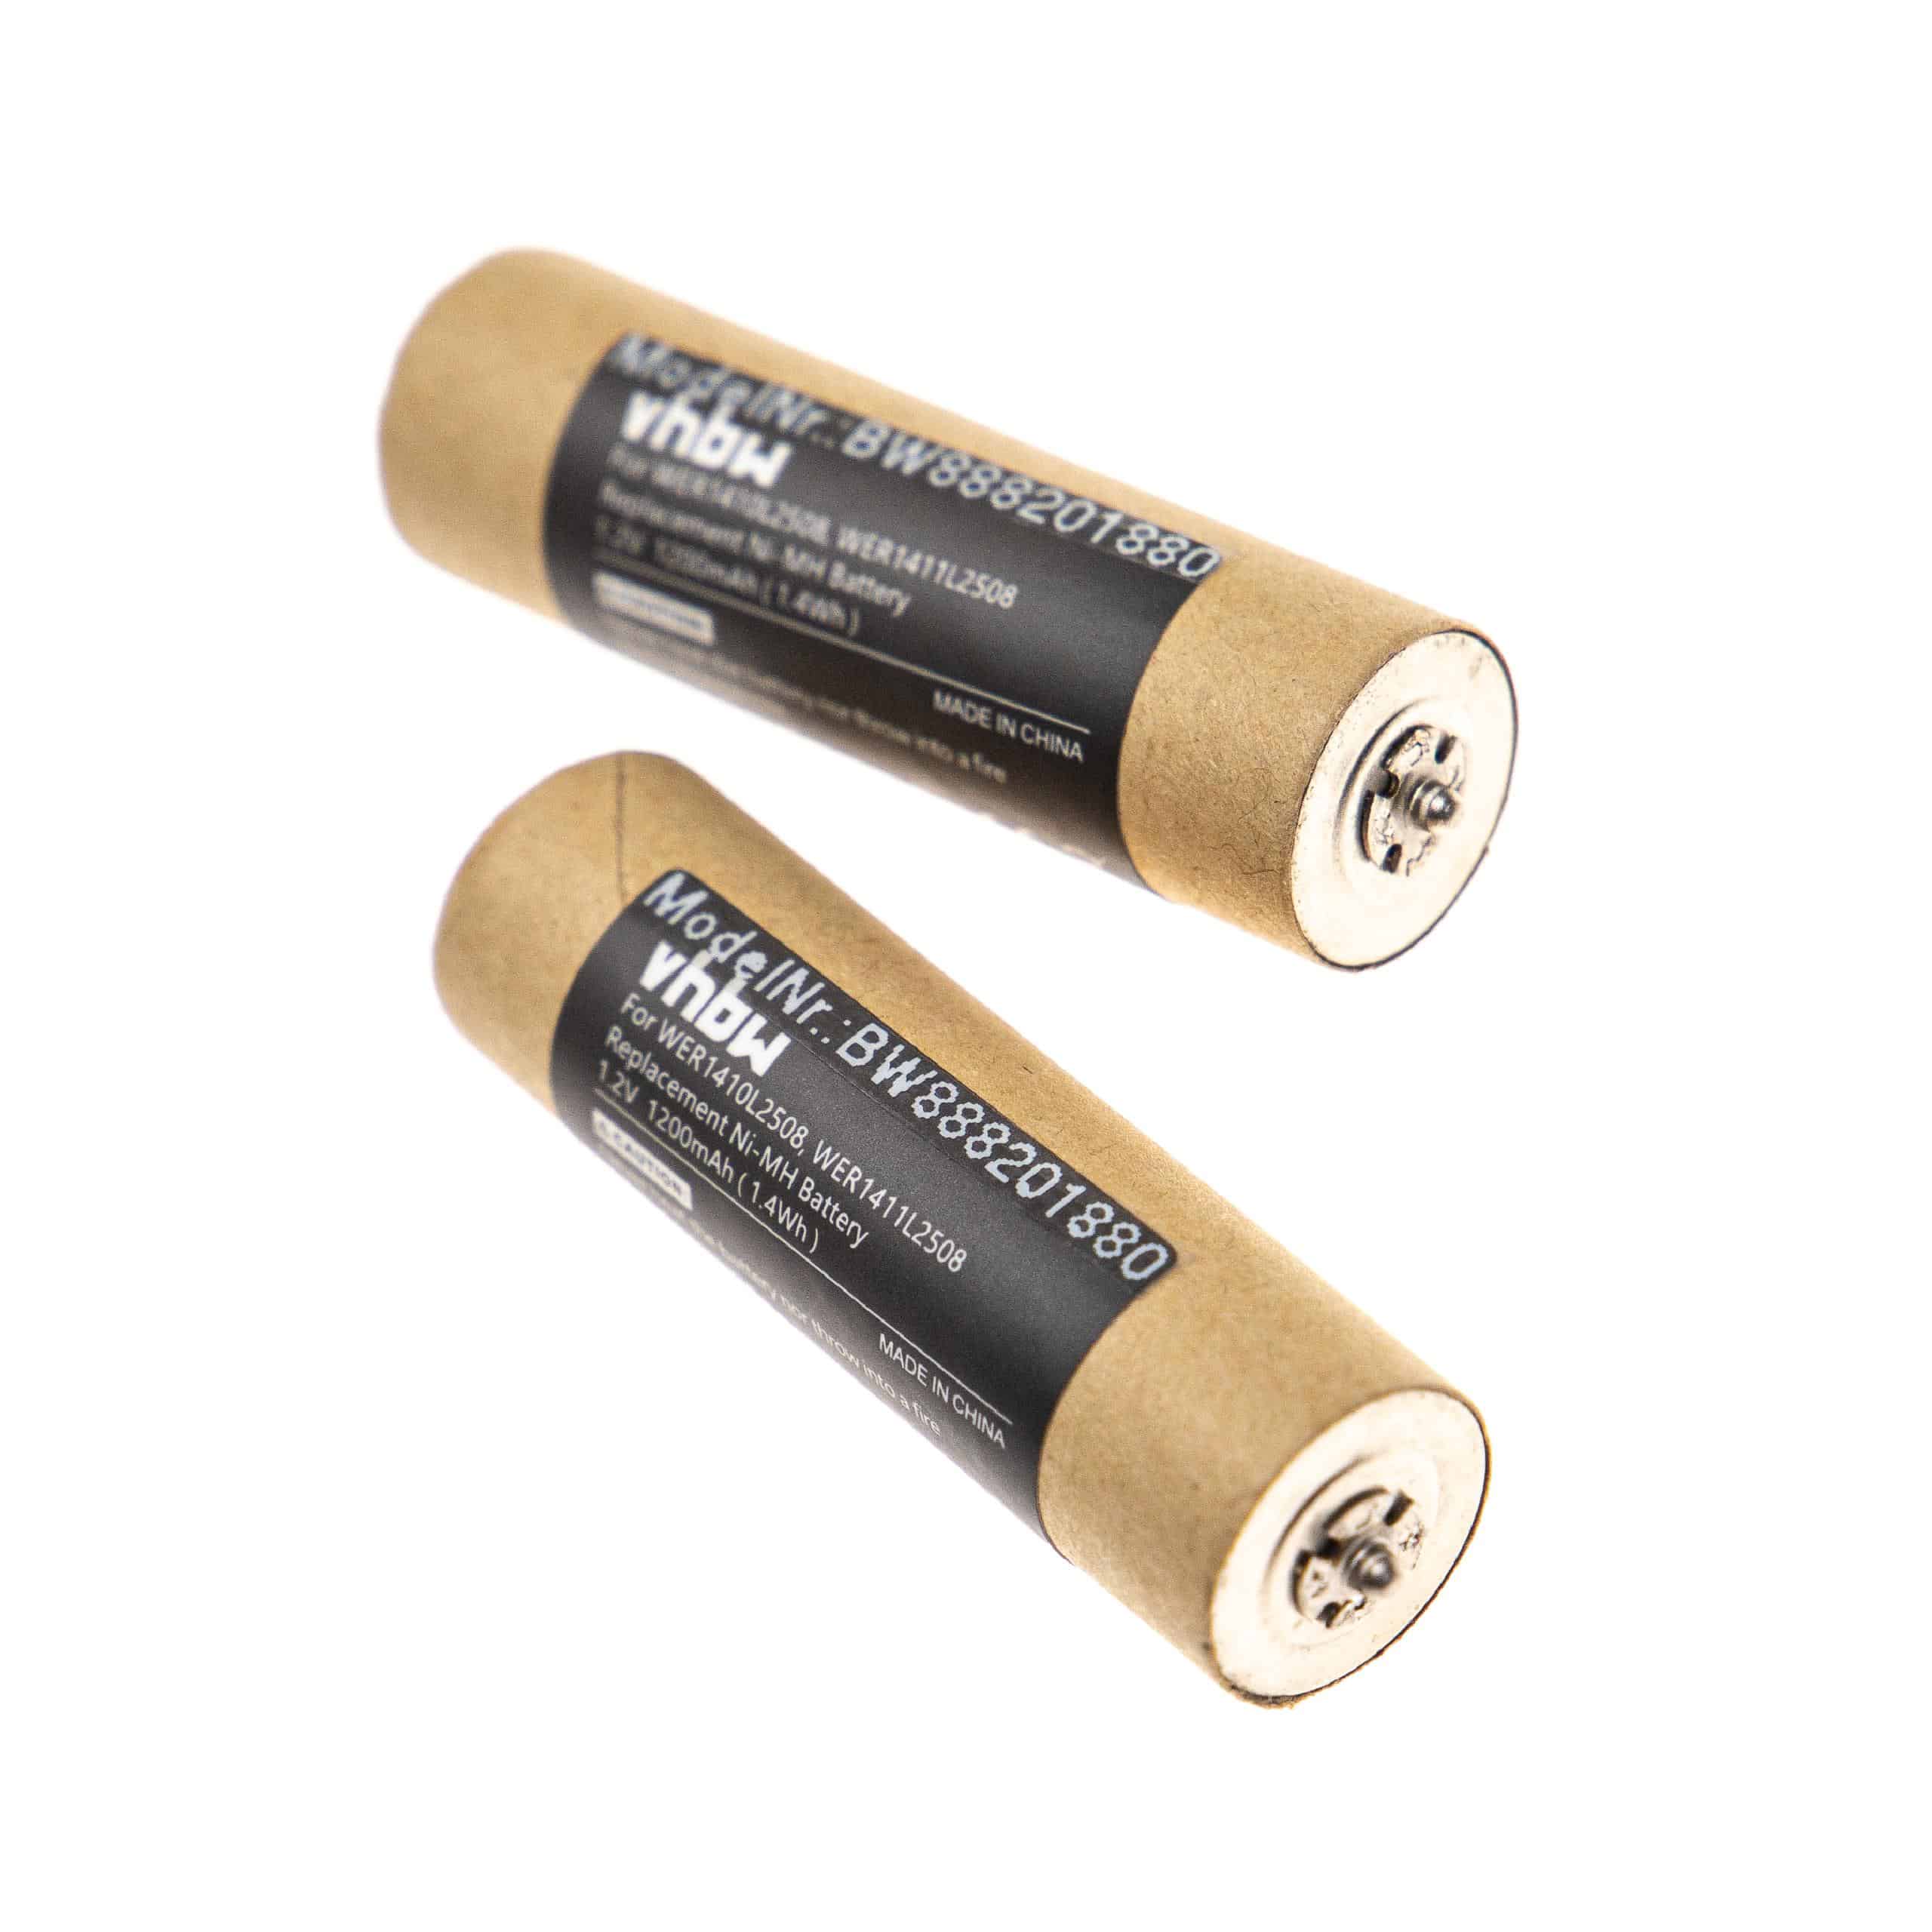 Batteries (2x pièces) remplace Panasonic WER154L2504, WER1410L2508 pour rasoir électrique - 1200mAh 1,2V NiMH